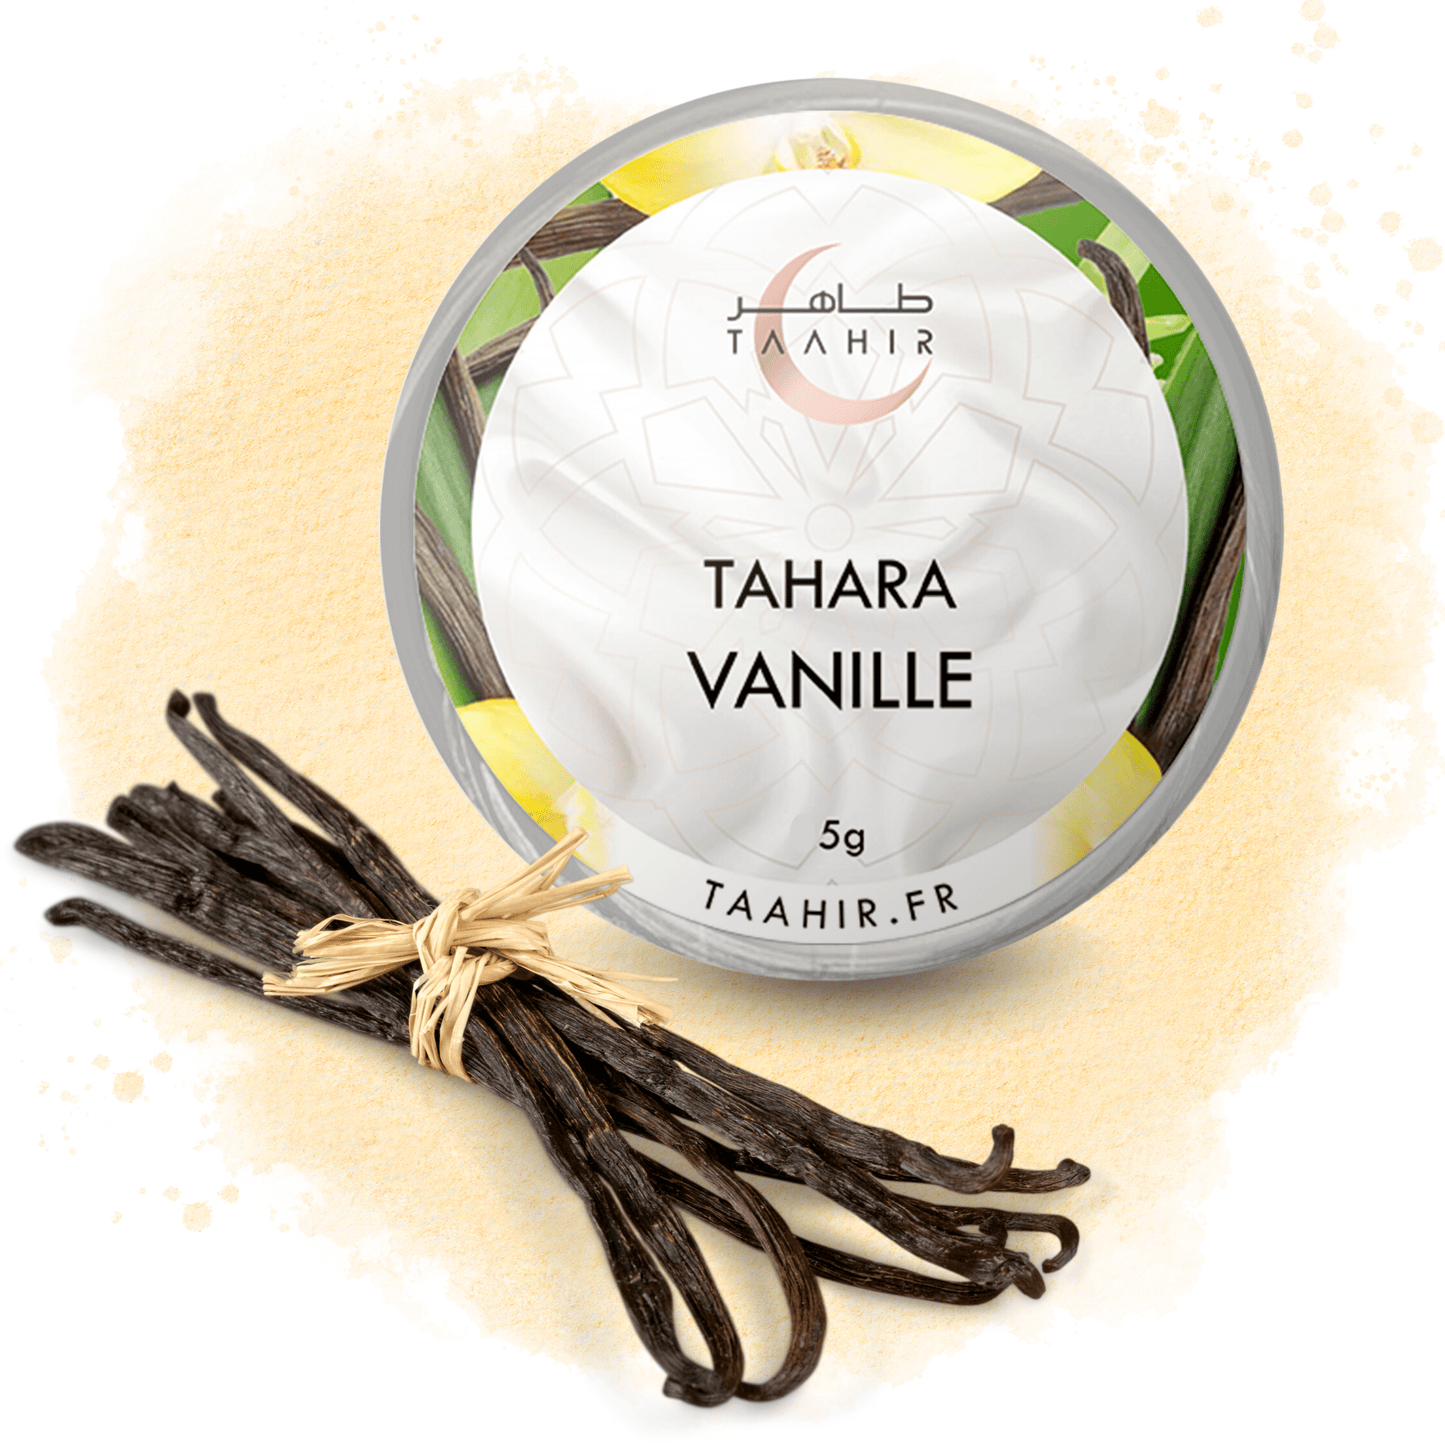 Taahir - Tahara - Musk "Vanilla" - 5g - Taahir - Ethni Beauty Market